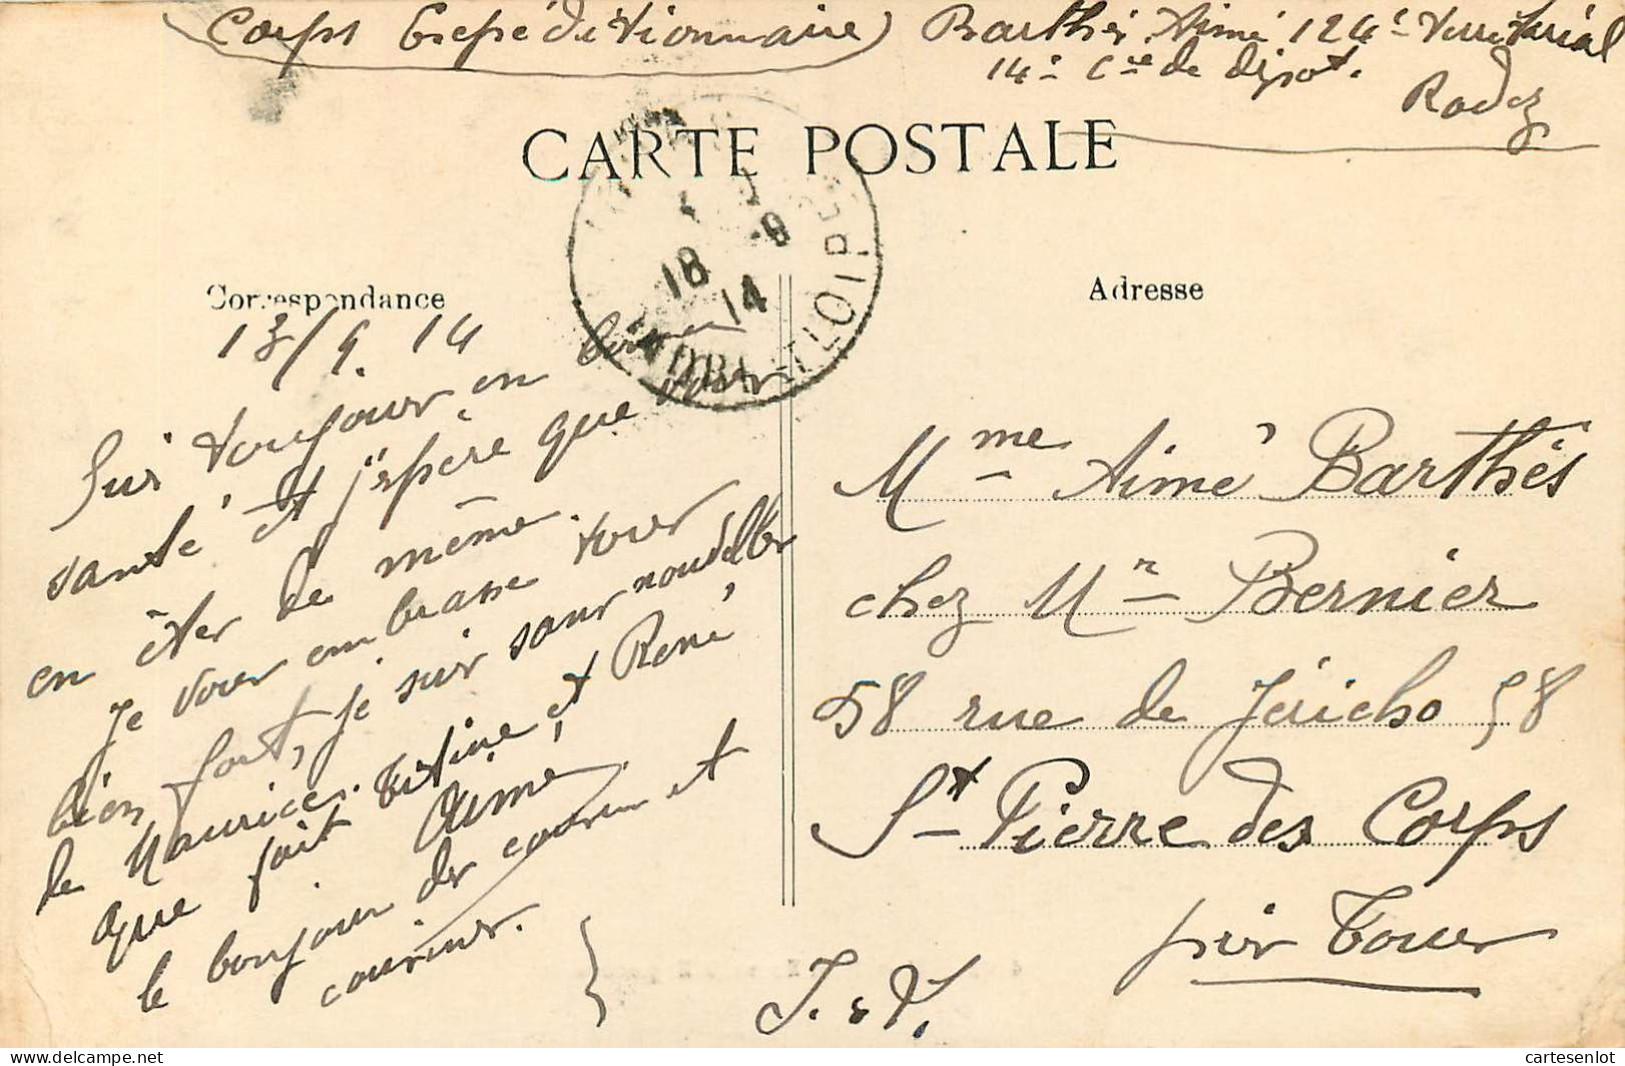 lot de 65 cartes postale France correspondance même famille